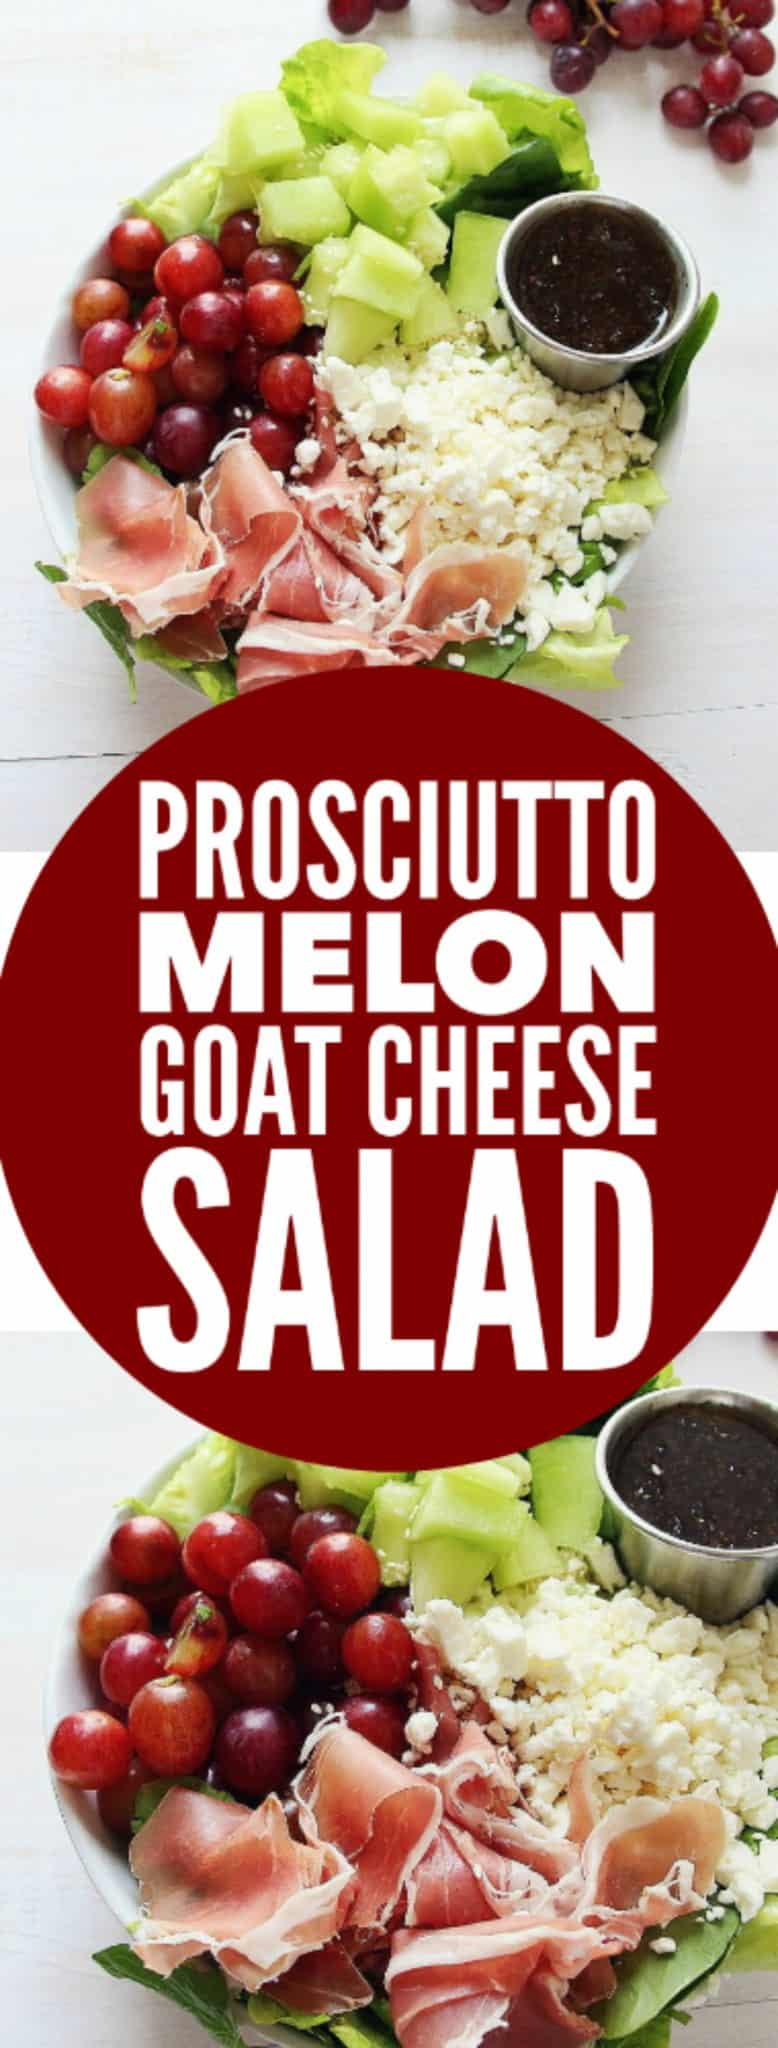 melon-salad